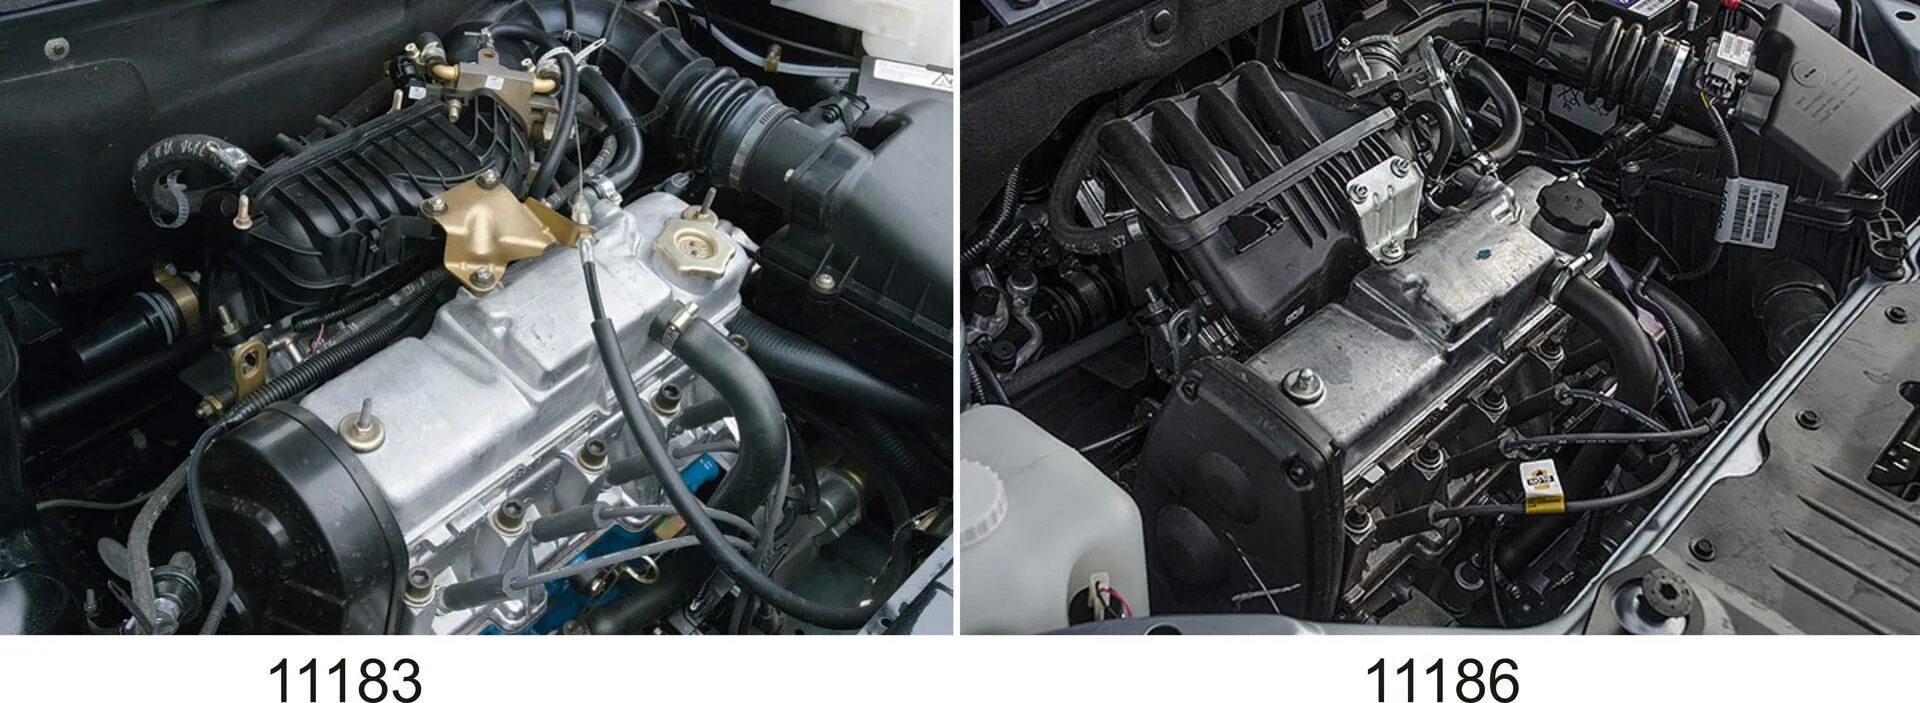 Мотор ВАЗ 11183, 1.6.. 11183 Двигатель 1.6 8 клапанов. 8 клапанов и 16 разница